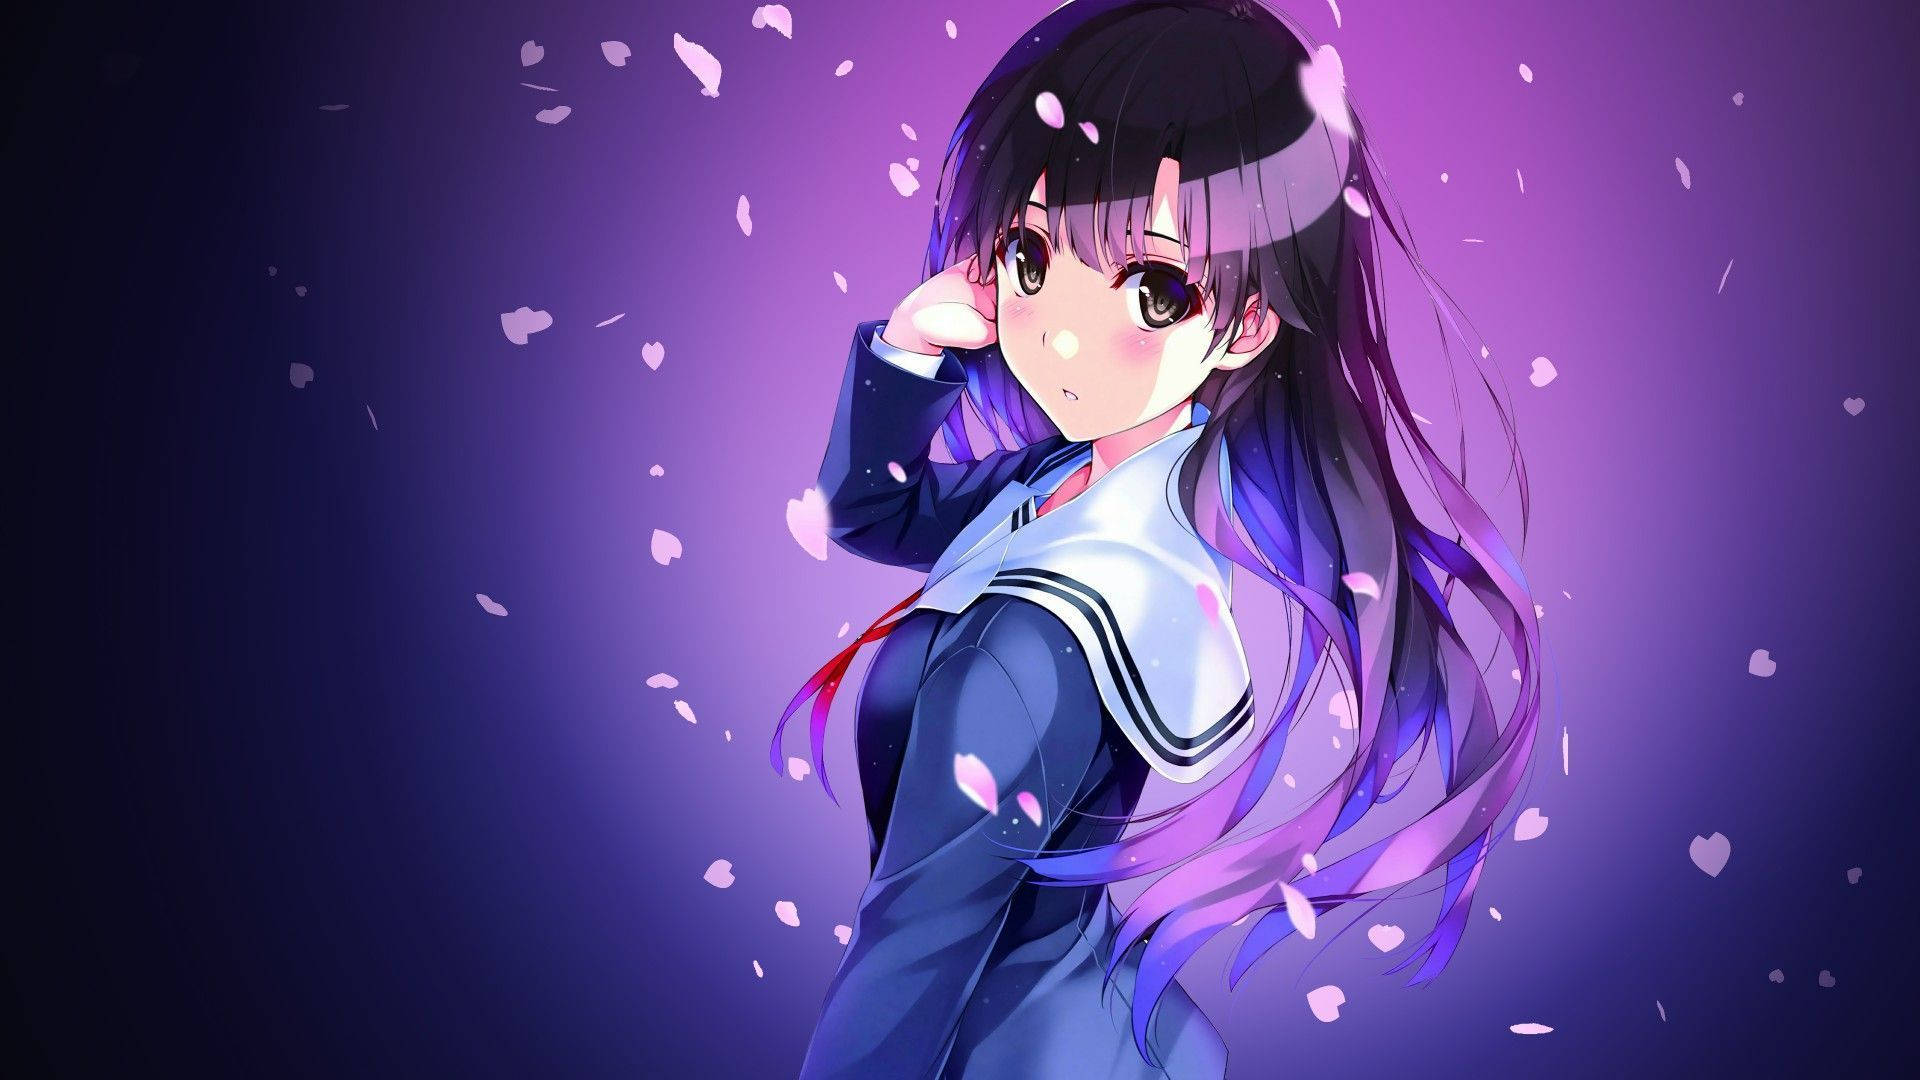 Aesthetic Anime Girl Wallpapers HD - PixelsTalk.Net